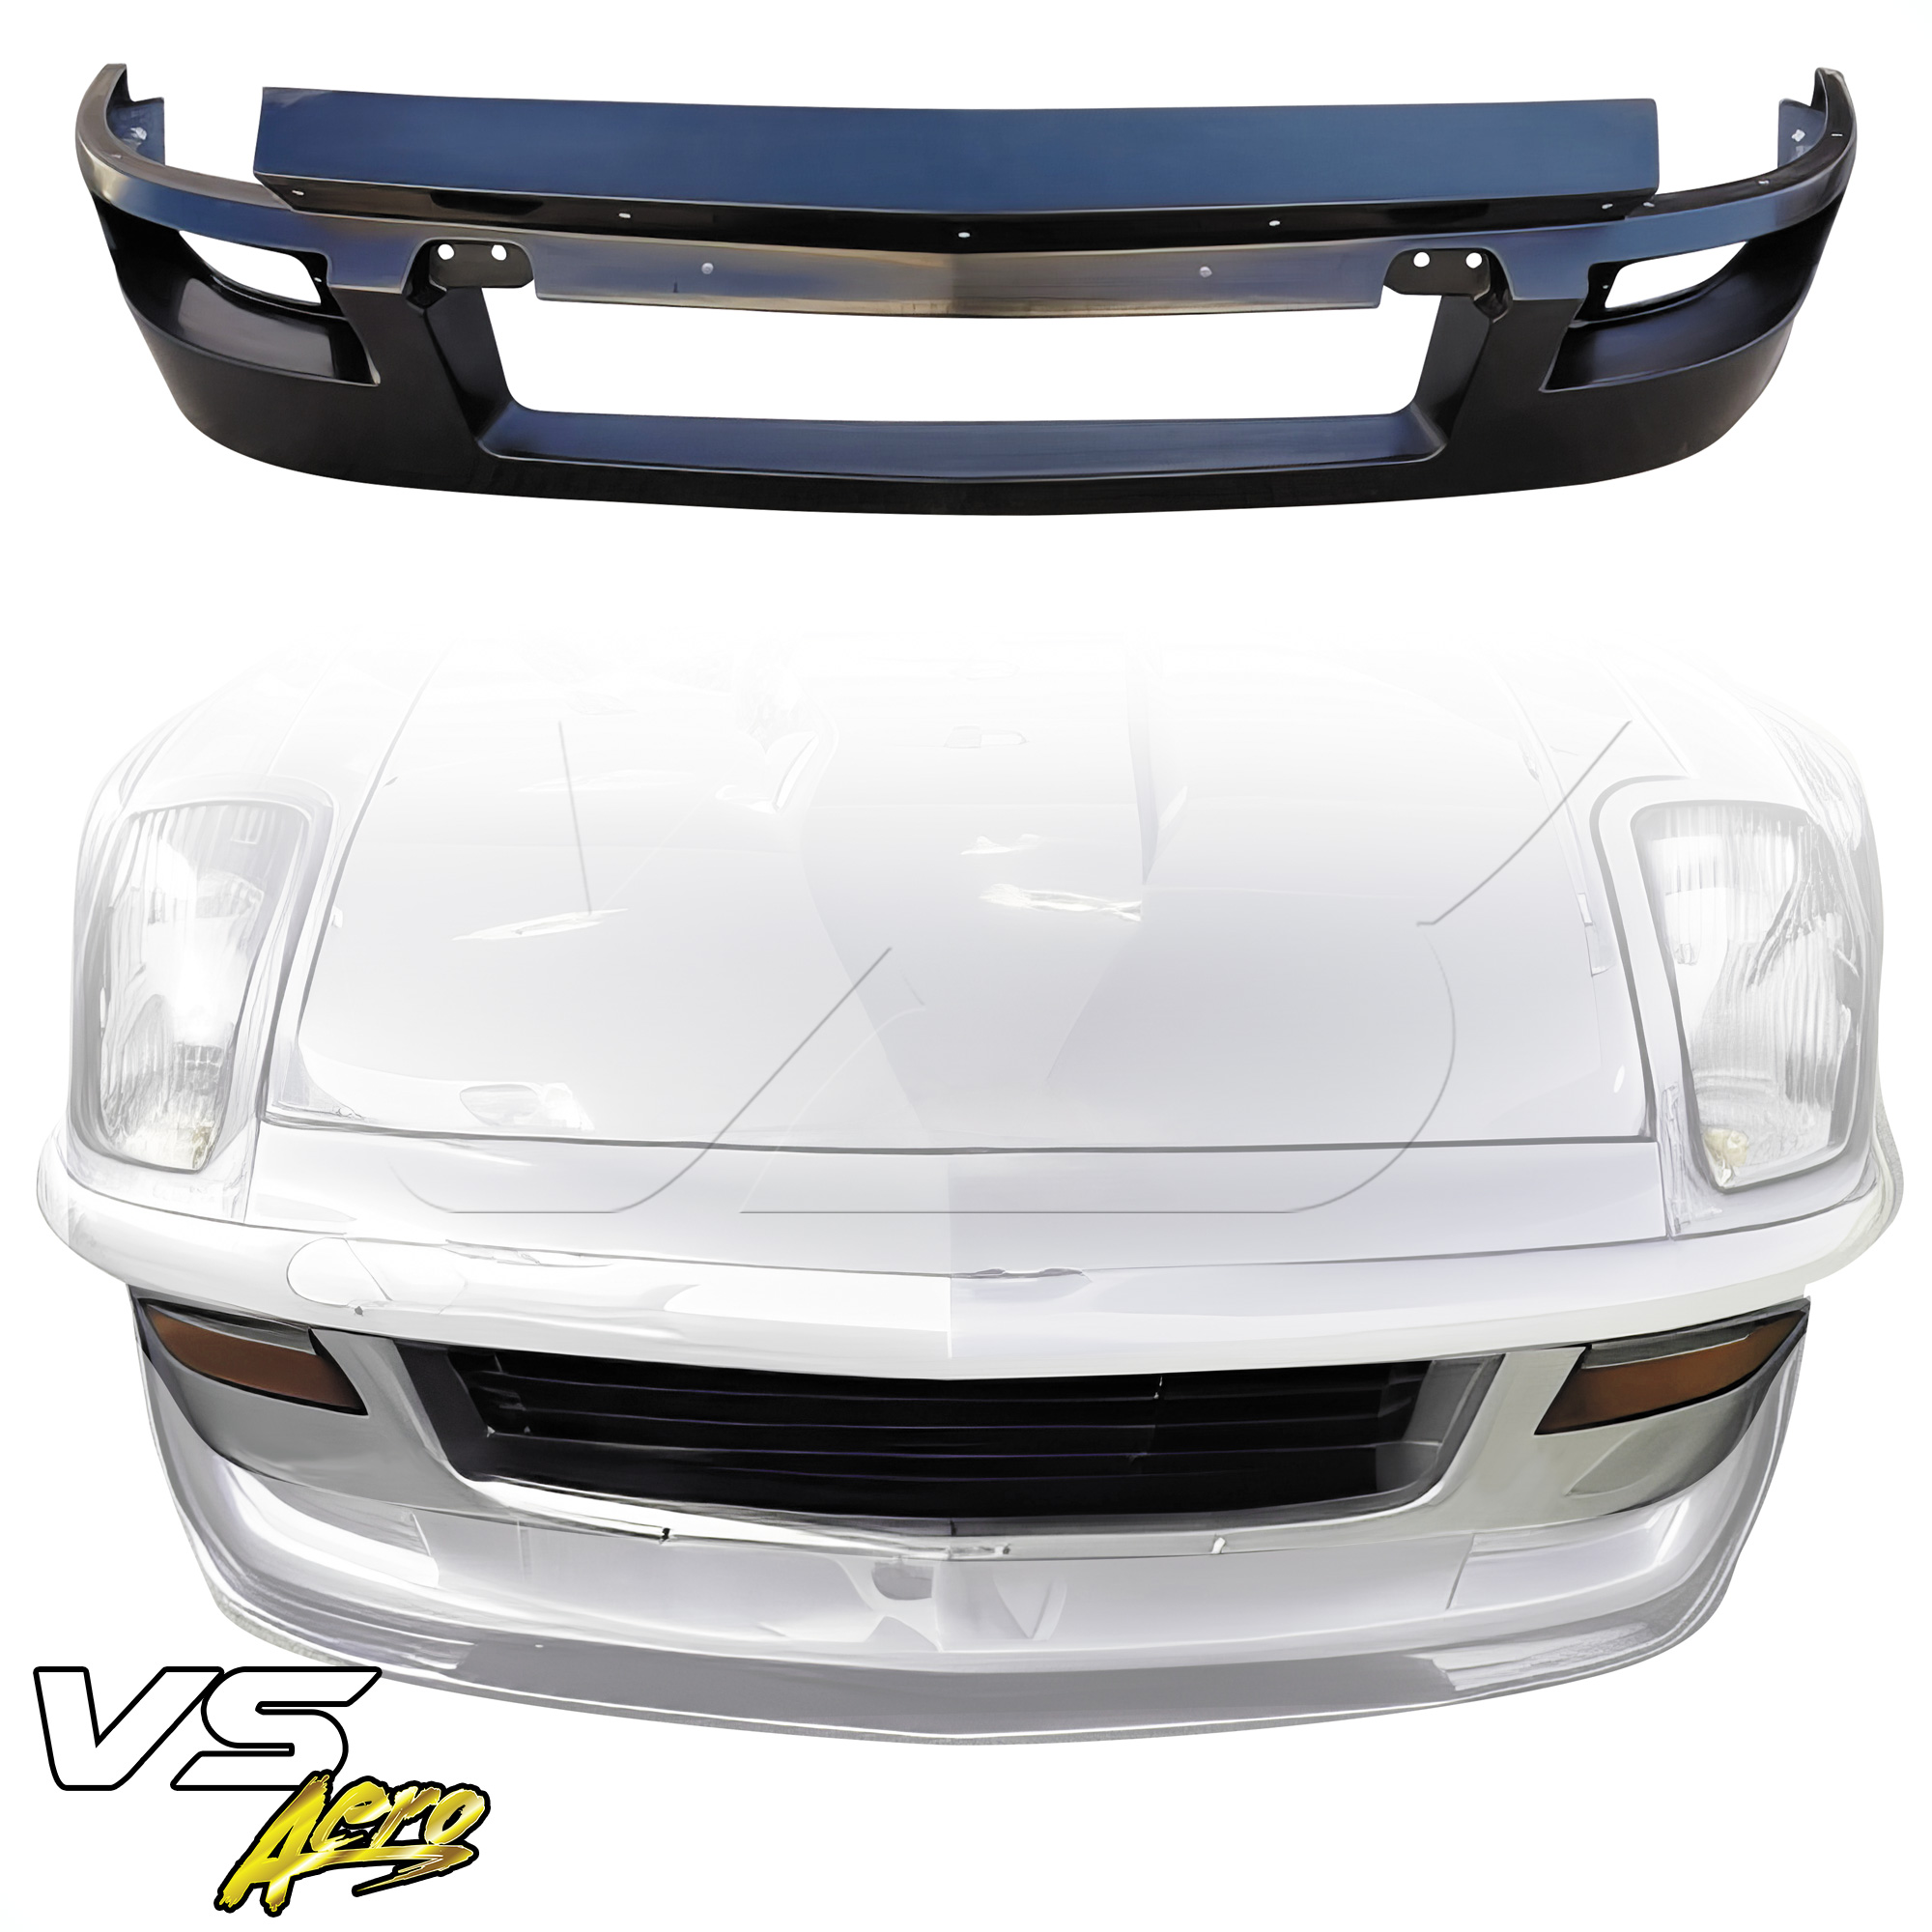 VSaero FRP TKYO Wide Body Front Bumper (upper) > Datsun 280ZX S130 1979-1983 > 2 Seater - Image 7